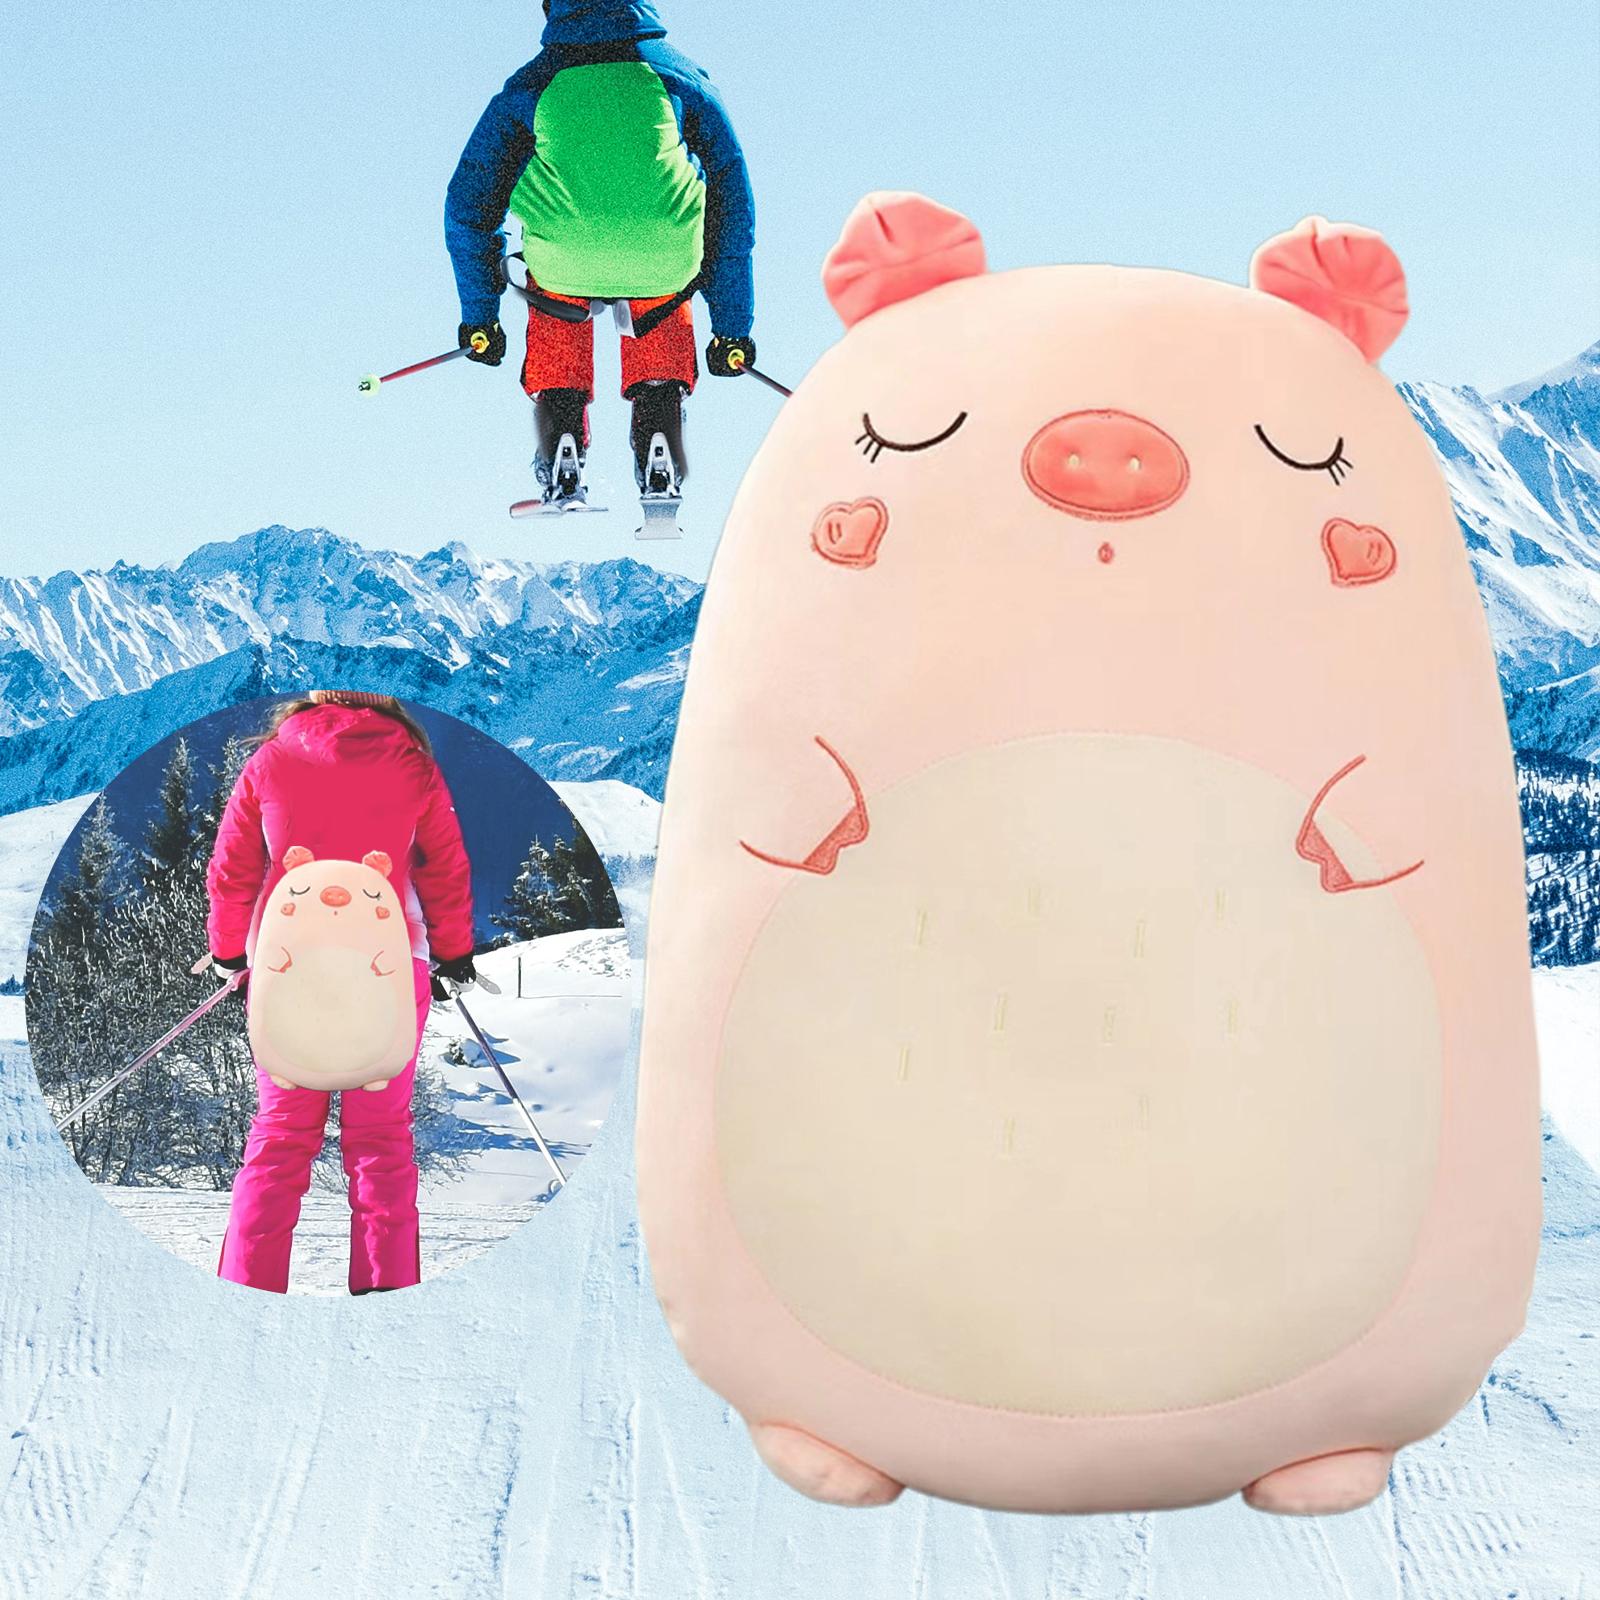 Hip Pad Cushion AntiSlip Protector Guard for Snowboard Skiing Skating Piggy